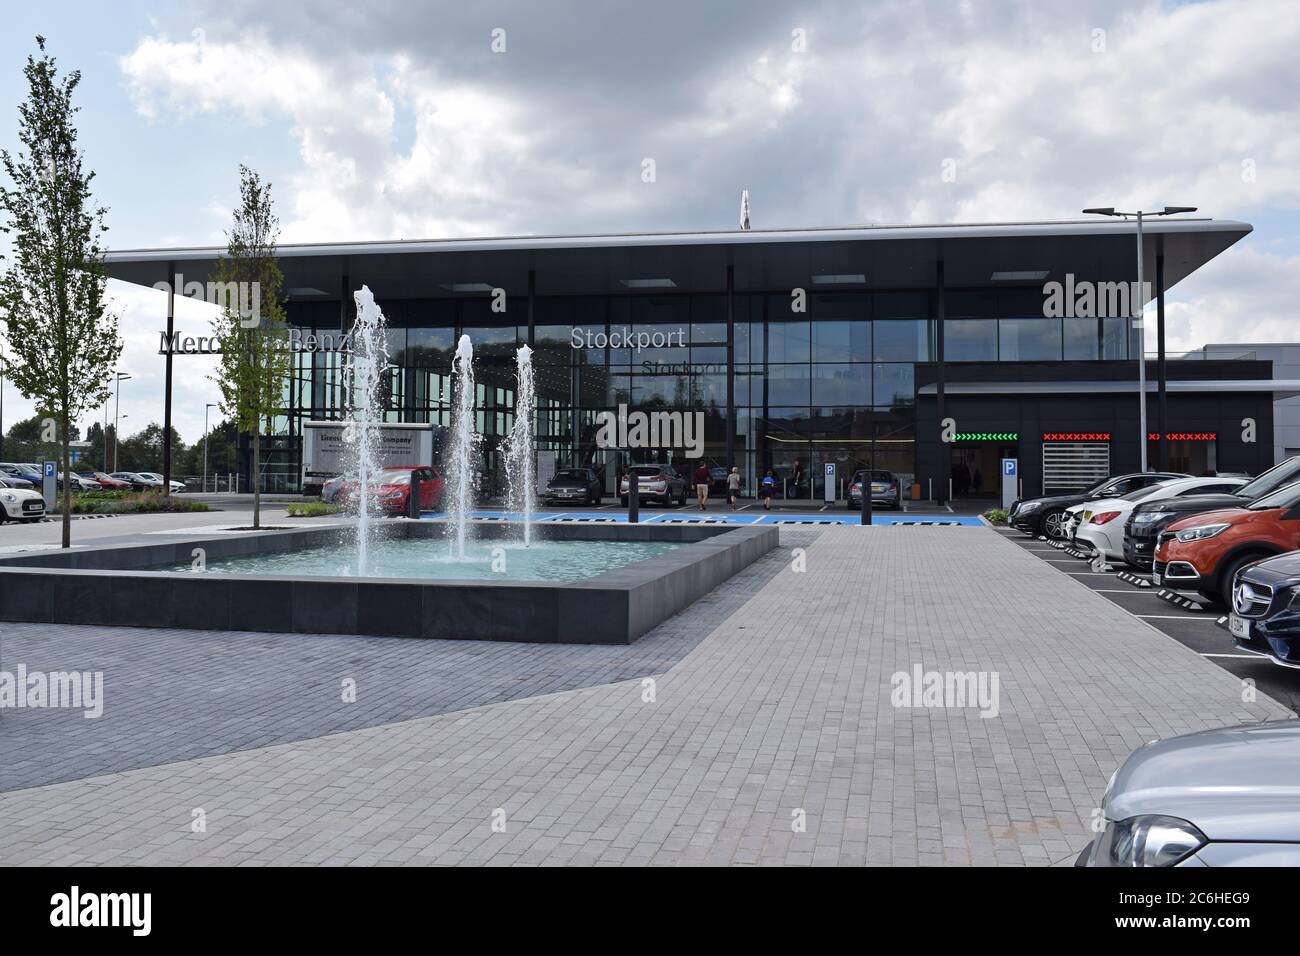 Großer Mercedes Benz Autohändler Stockport, Großbritannien eröffnet 29. Juli 2019. Blick auf das Betreten mit Brunnen und geparkten Autos. Stockfoto